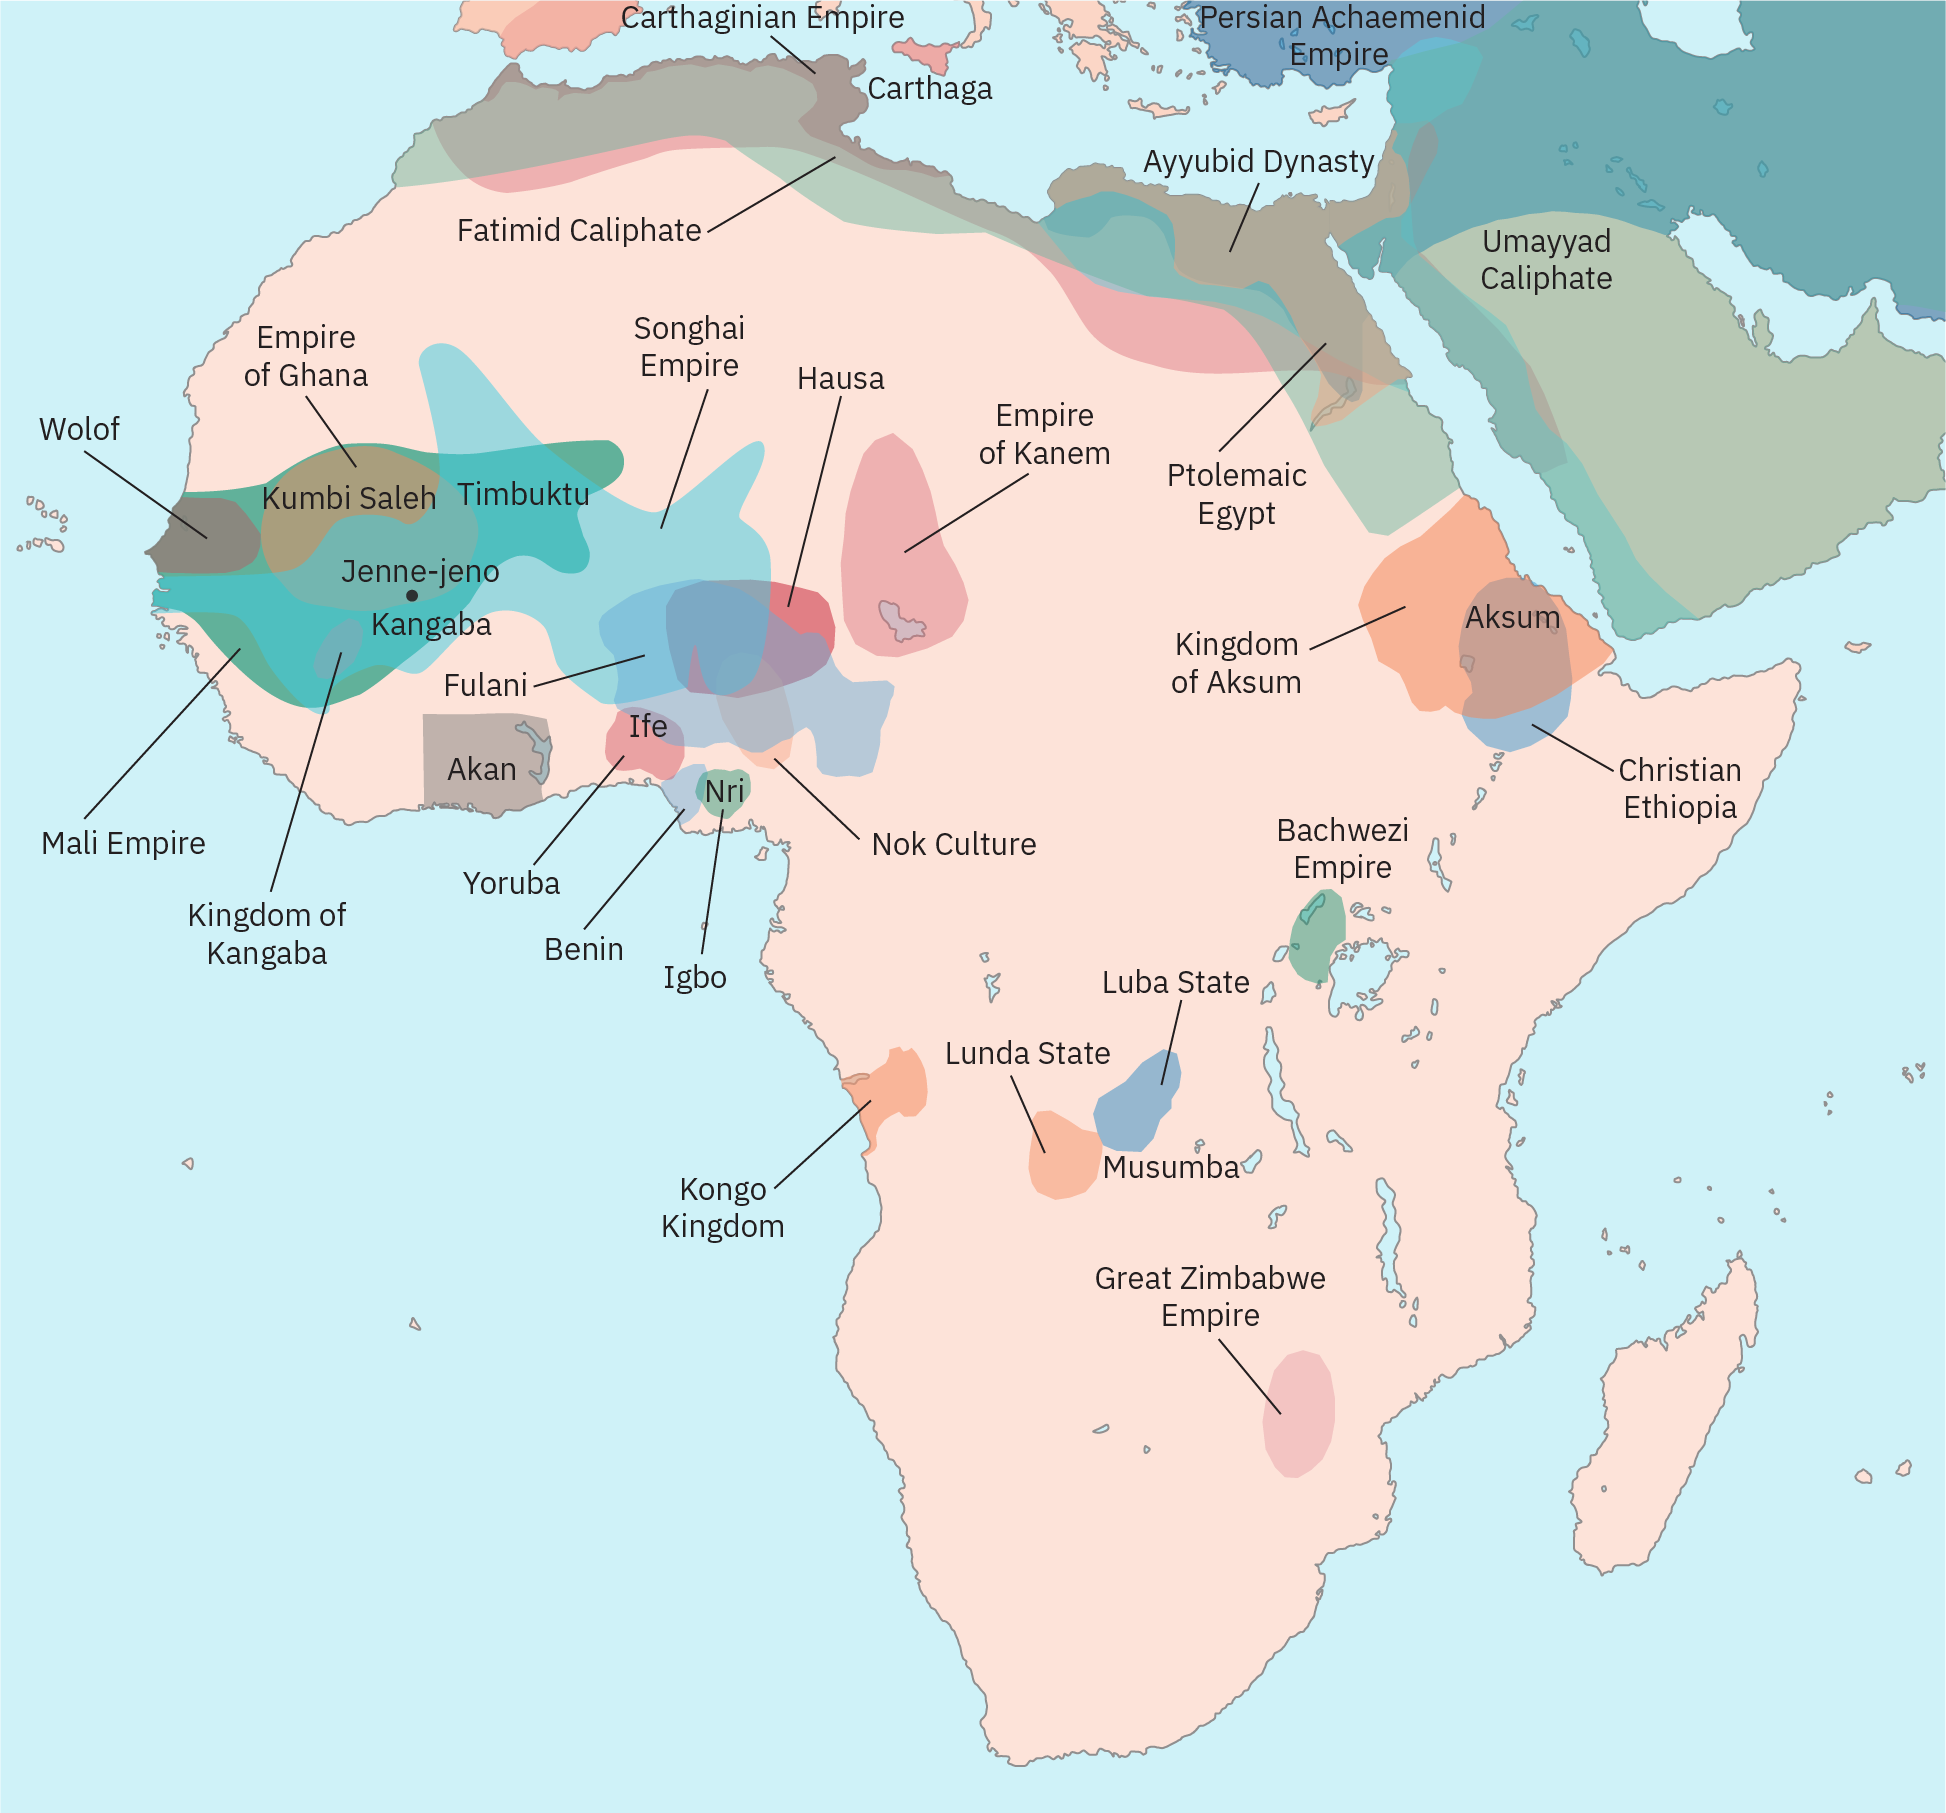 Esboço da África com áreas sombreadas para indicar entidades políticas pré-coloniais. Essas áreas são menores e muito mais localizadas do que os estados-nação contemporâneos. Grande parte do mapa não está sombreada, indicando que não há estado ou império centralizado.